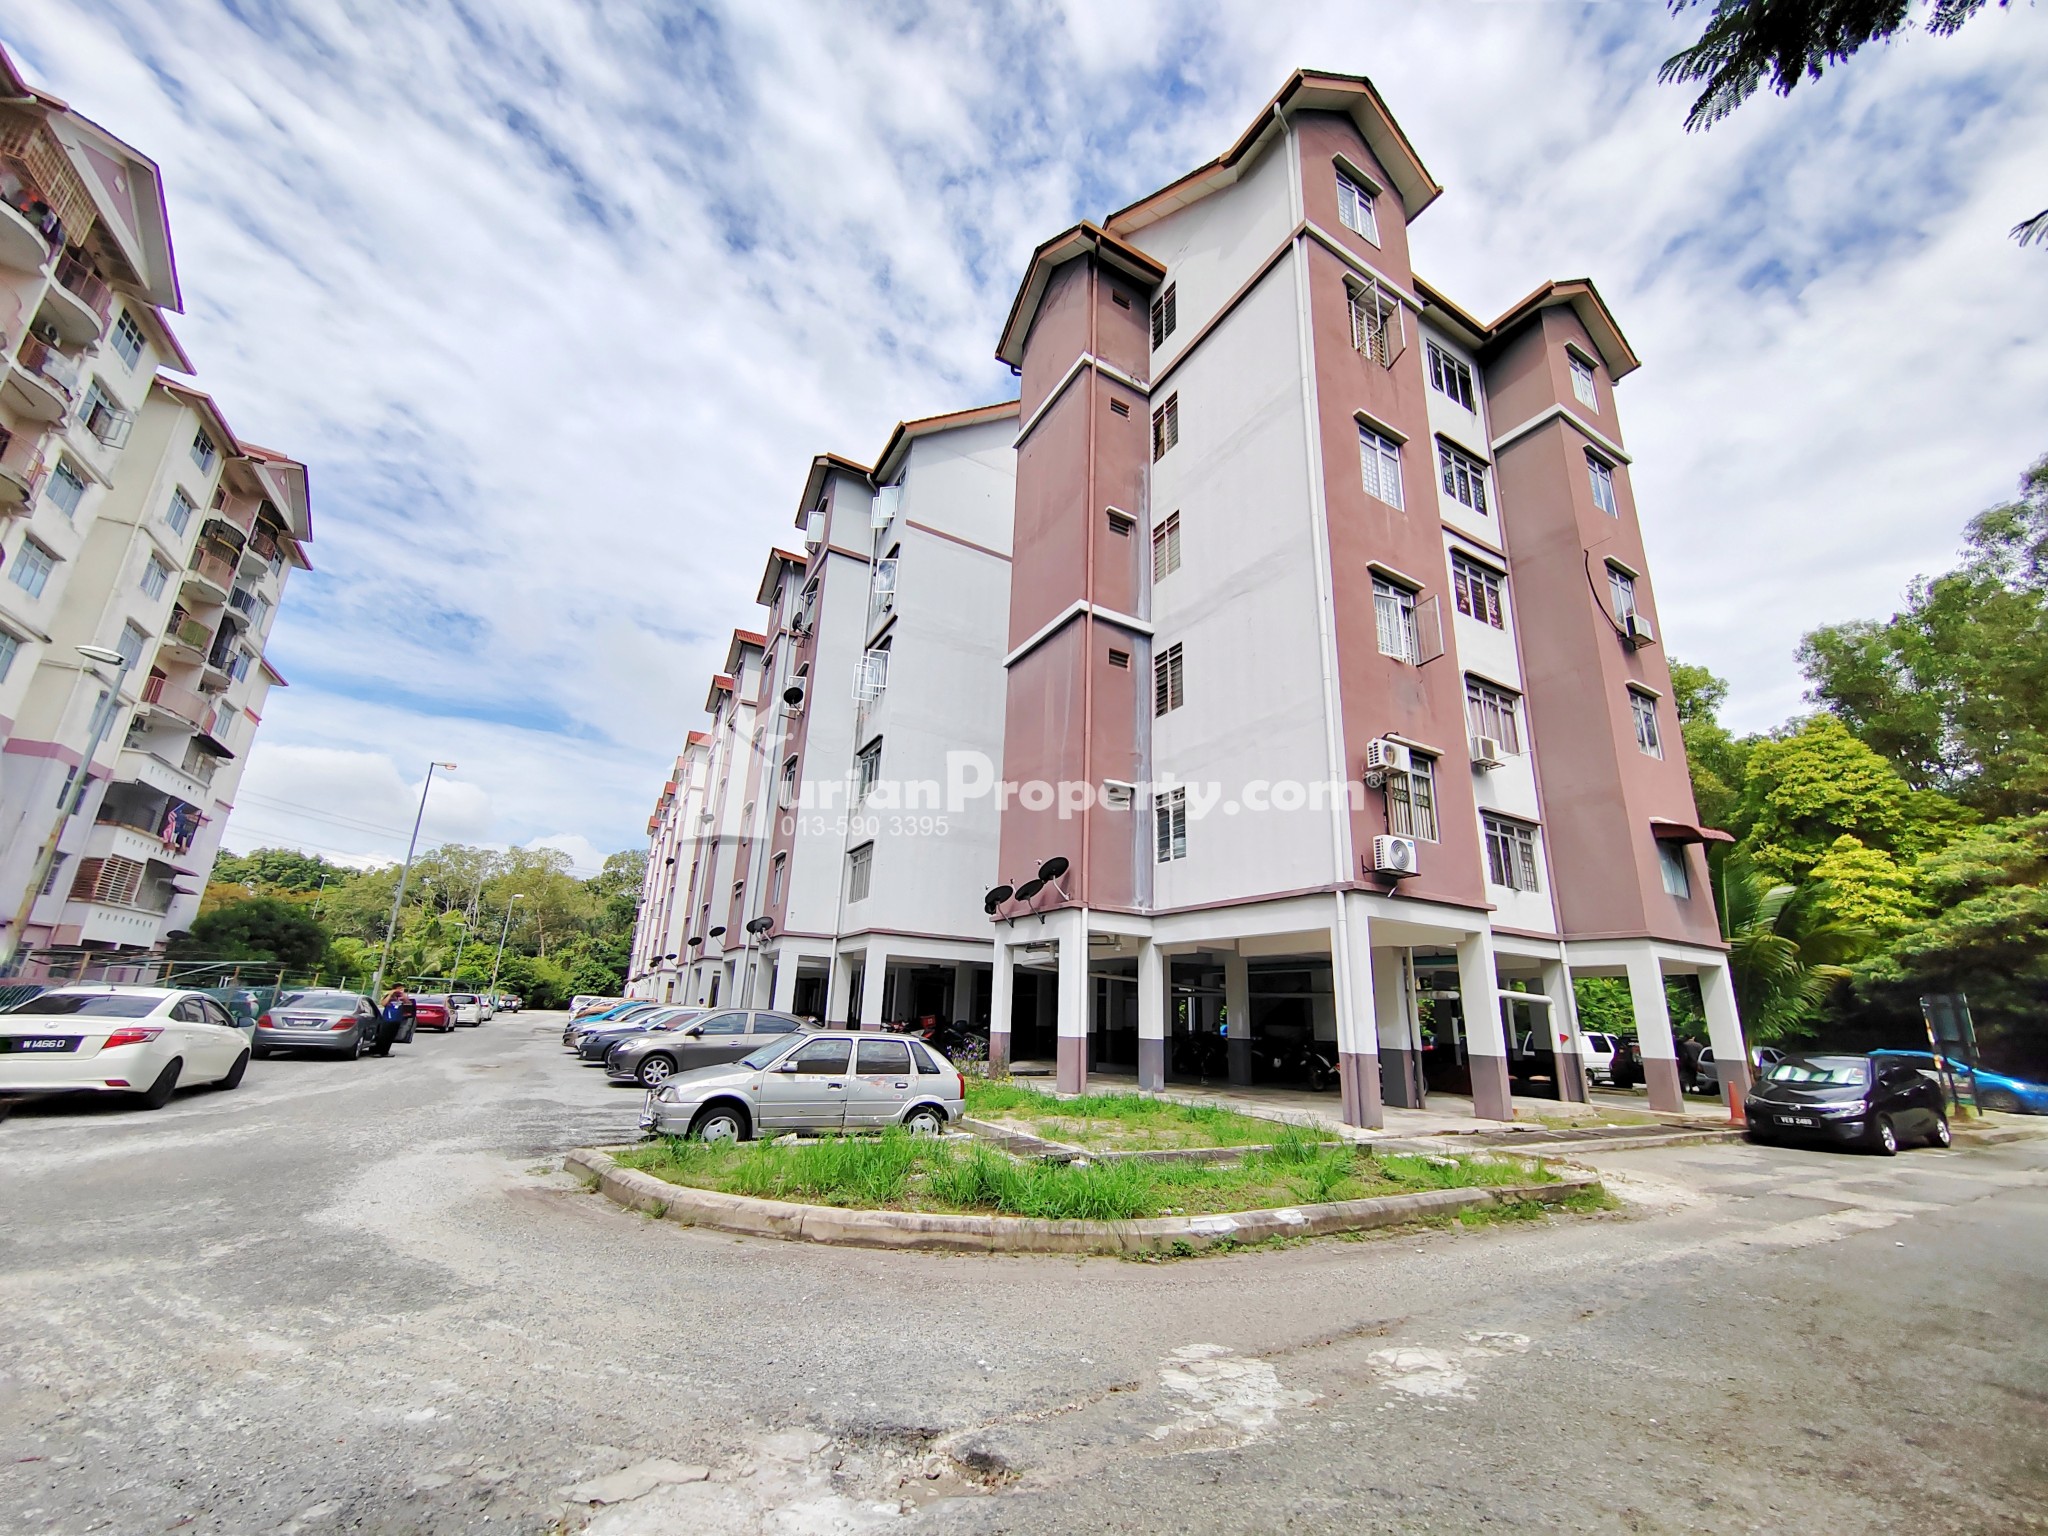 Apartment For Sale at Bandar Baru Bangi